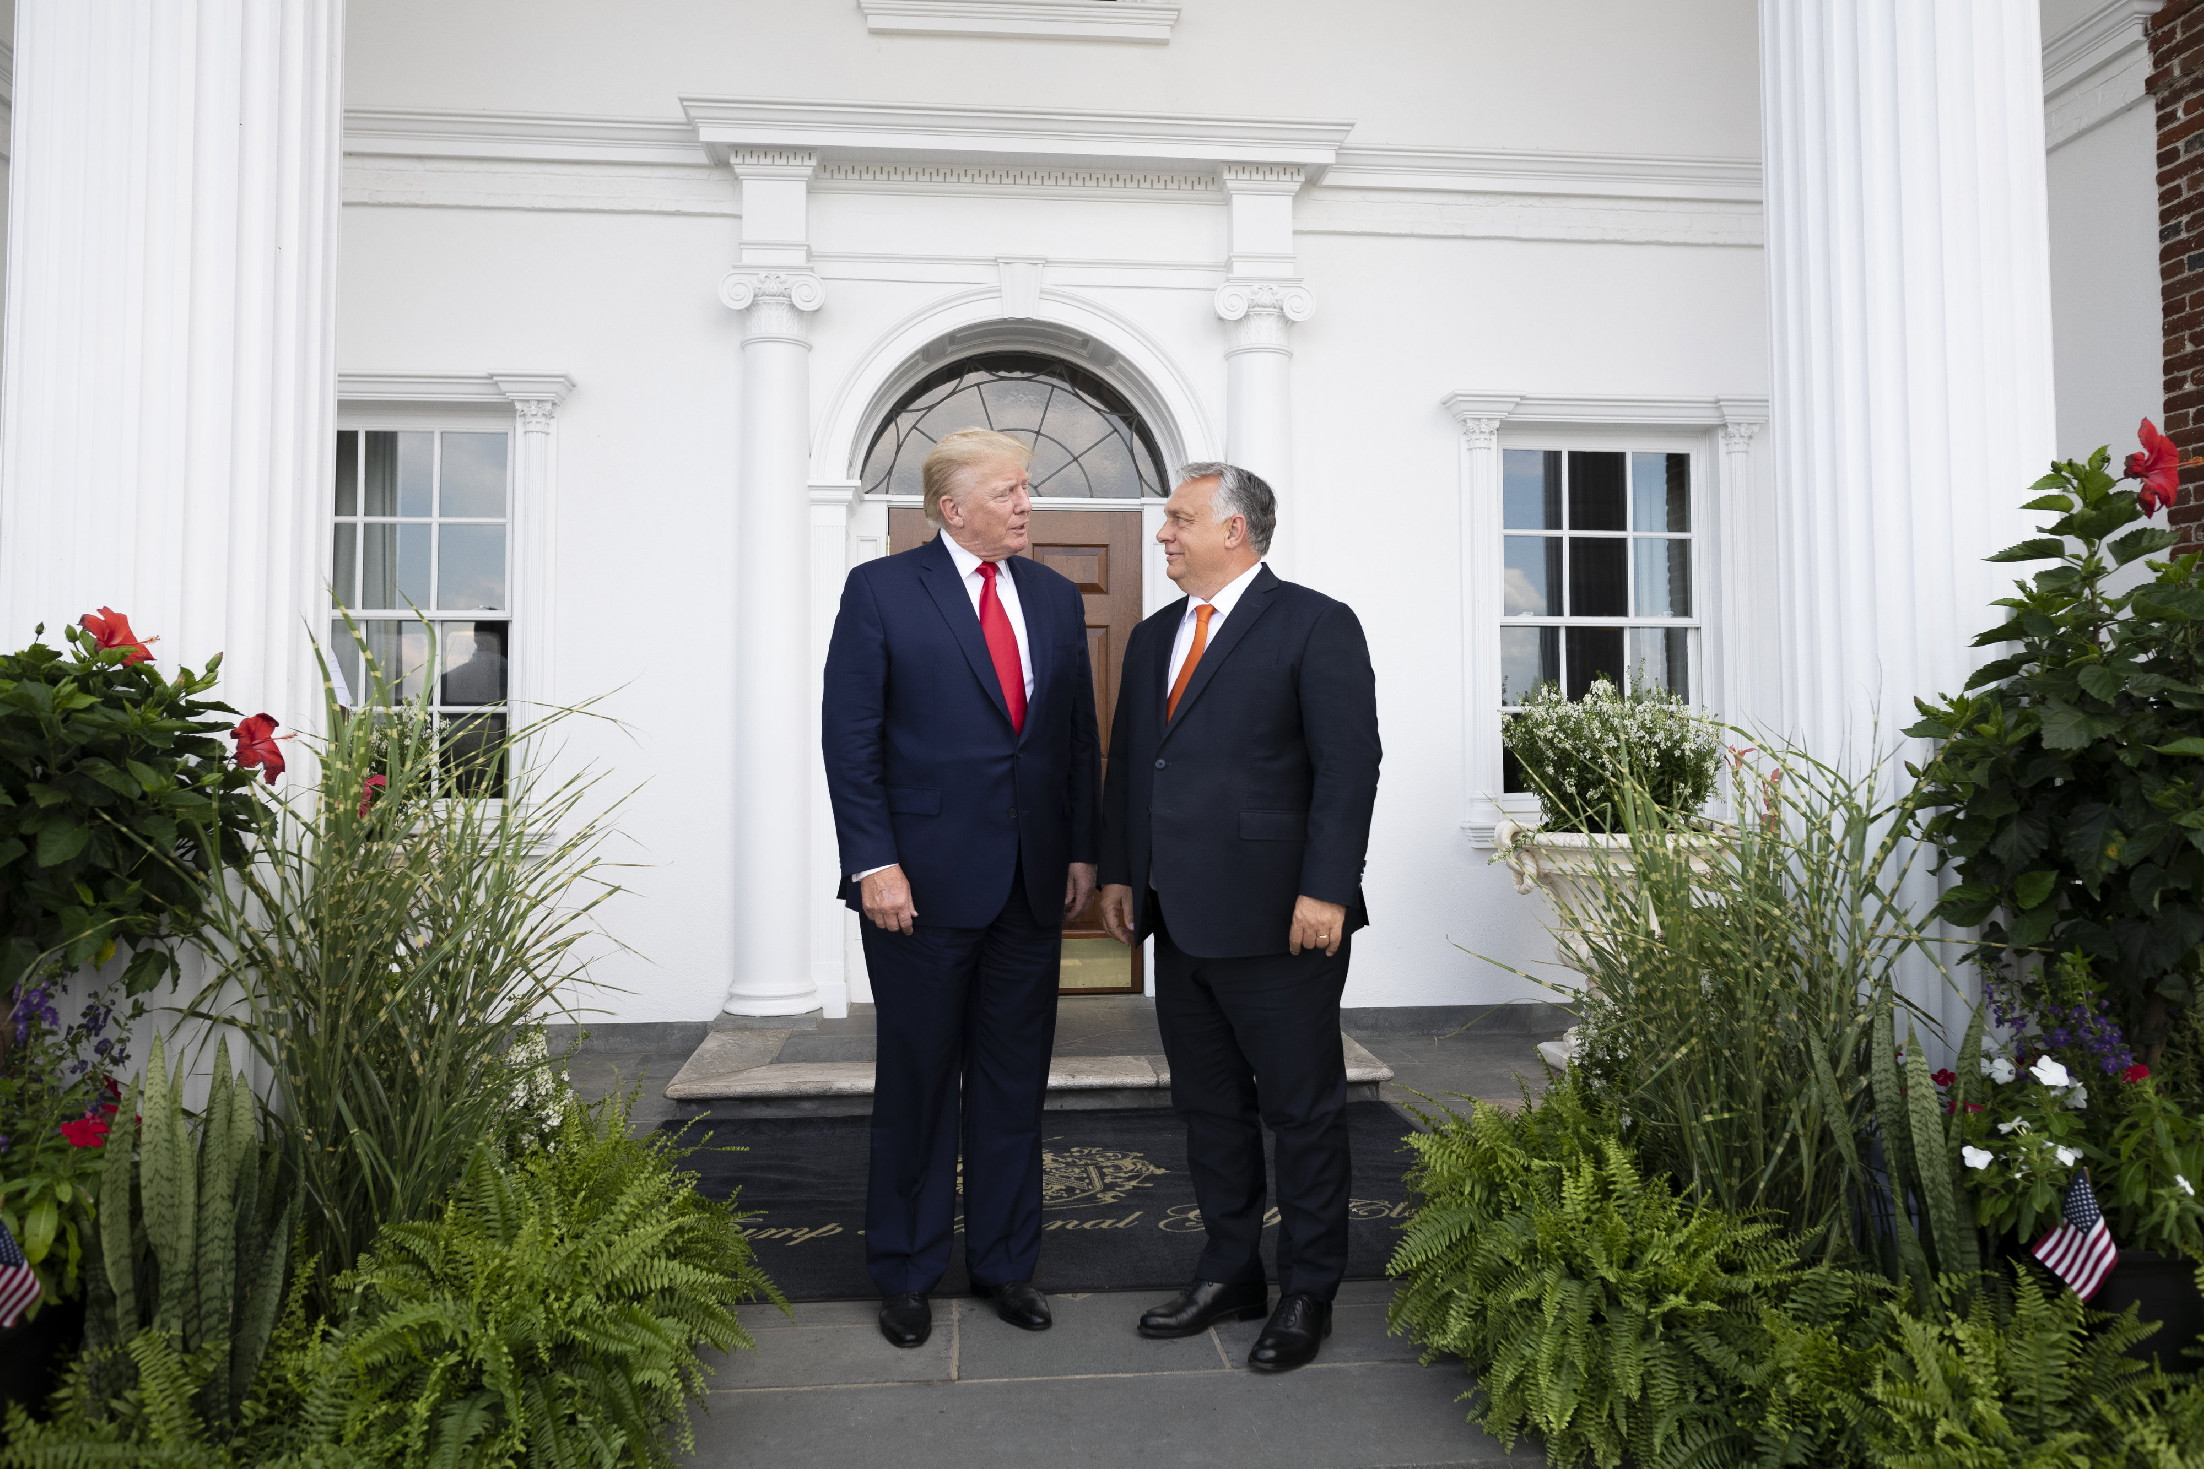 Donald Trump fogadta Orbán Viktort az Egyesült Államokban